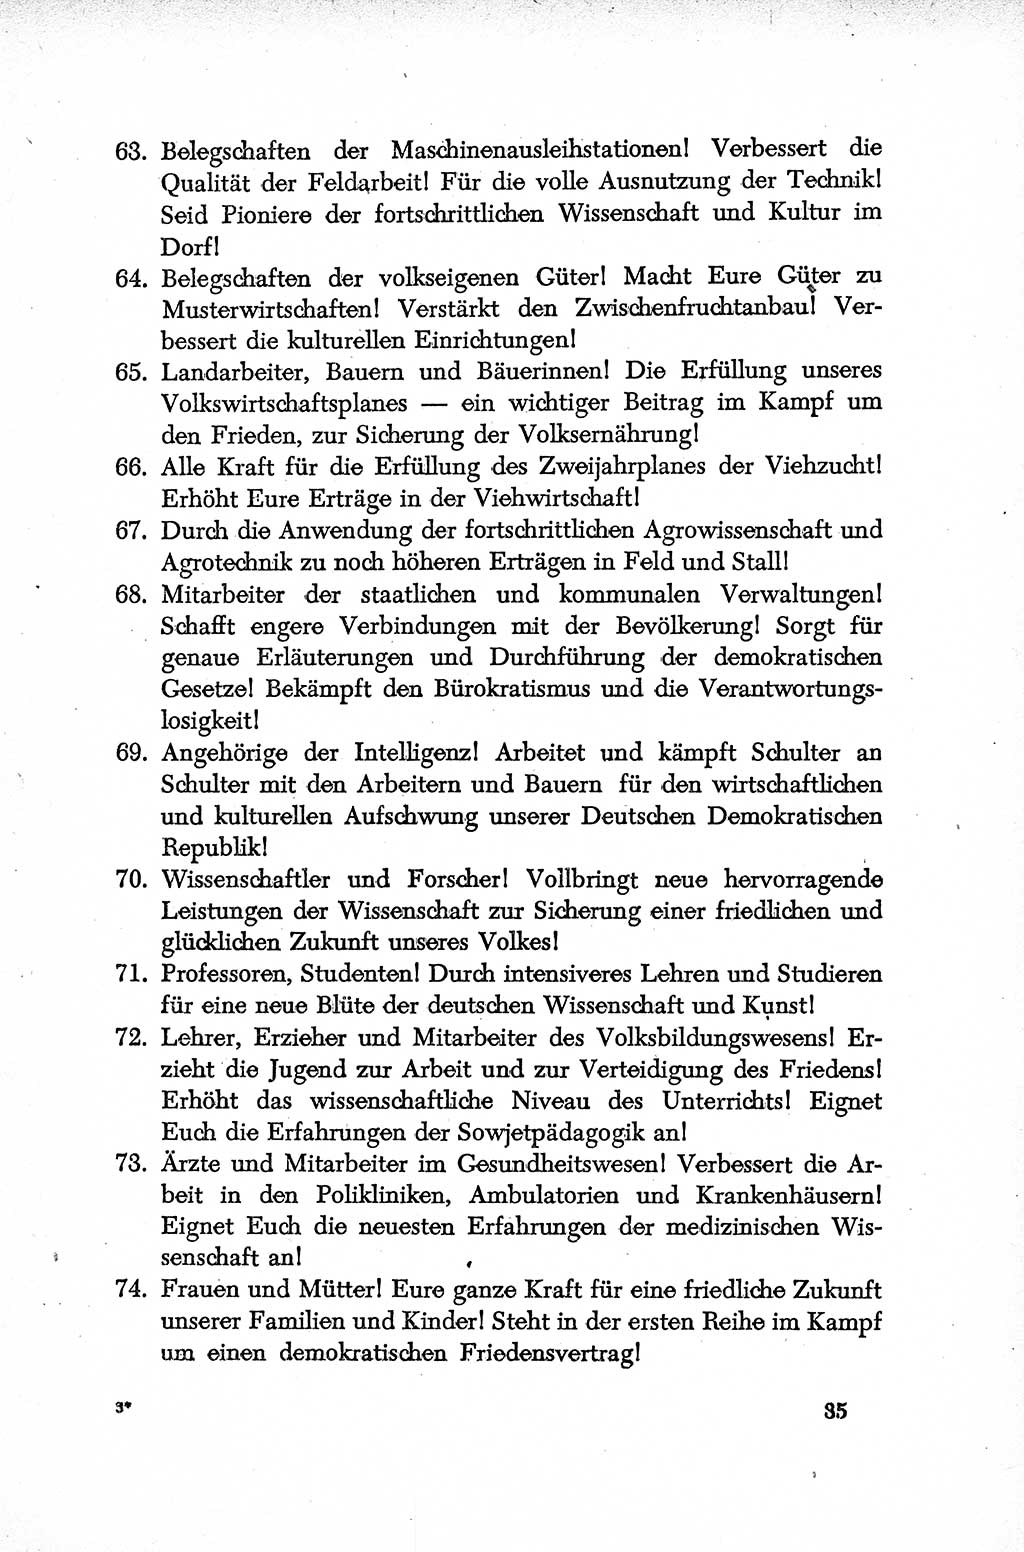 Dokumente der Sozialistischen Einheitspartei Deutschlands (SED) [Deutsche Demokratische Republik (DDR)] 1952-1953, Seite 35 (Dok. SED DDR 1952-1953, S. 35)